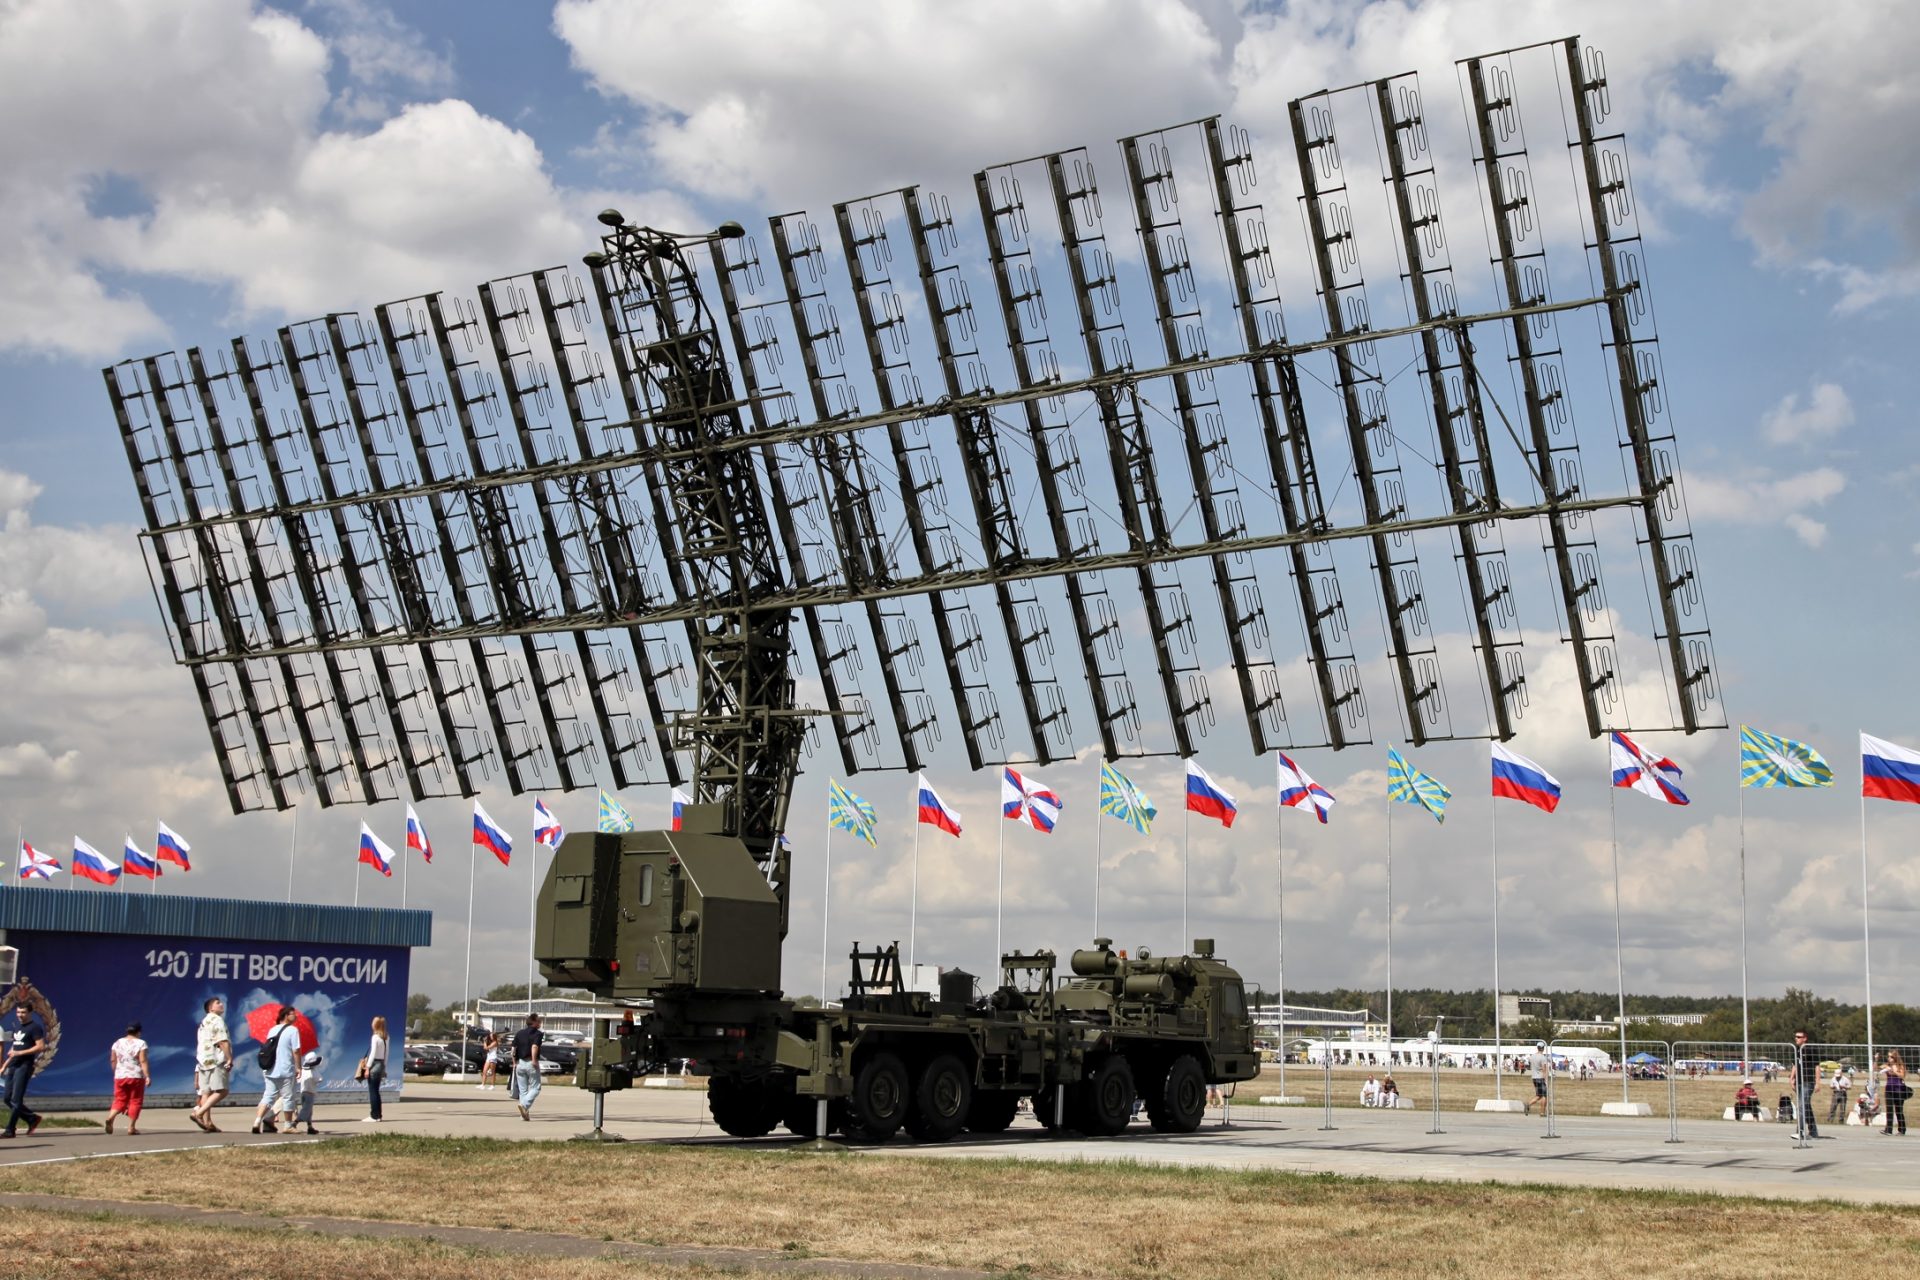 El coste del sistema de radar ruso no está claro